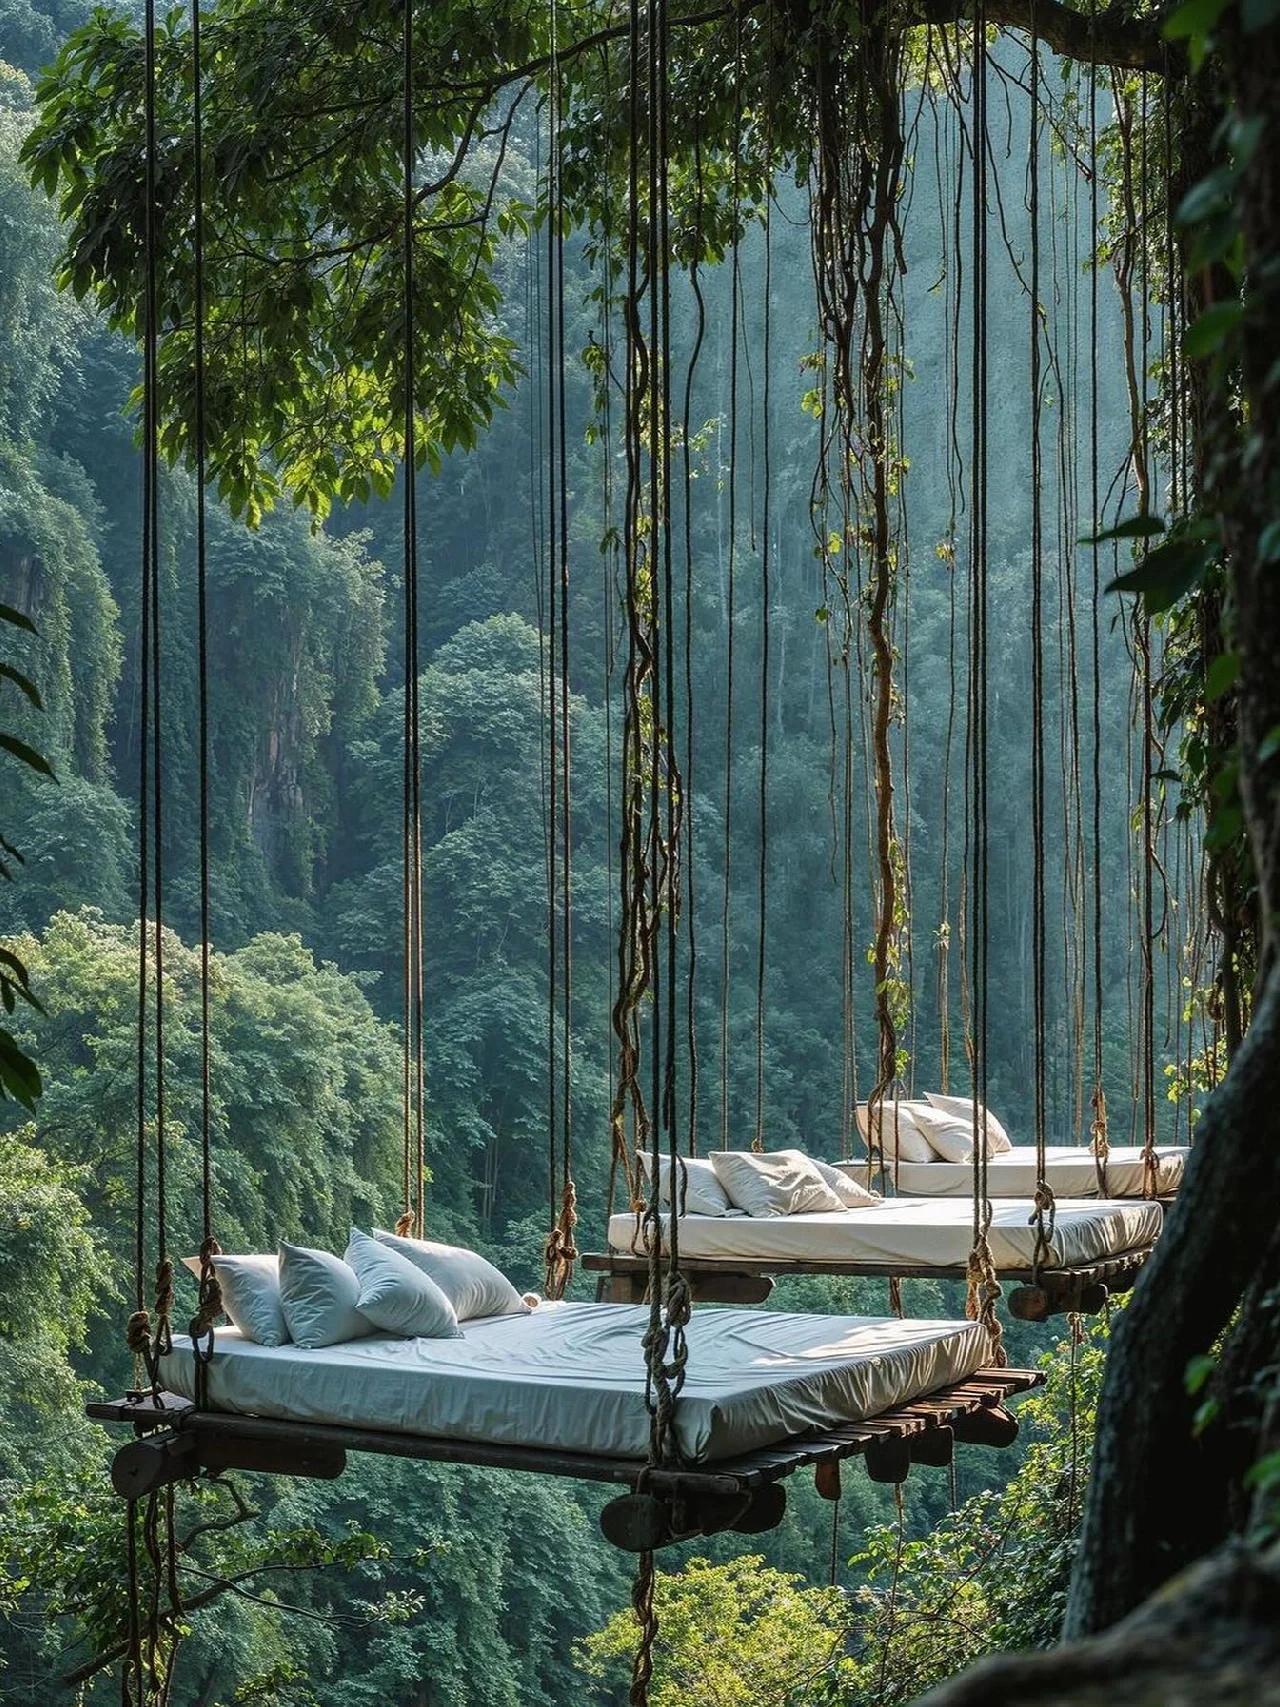 “仿佛睡进了人间仙境!印尼雨林度假酒店”